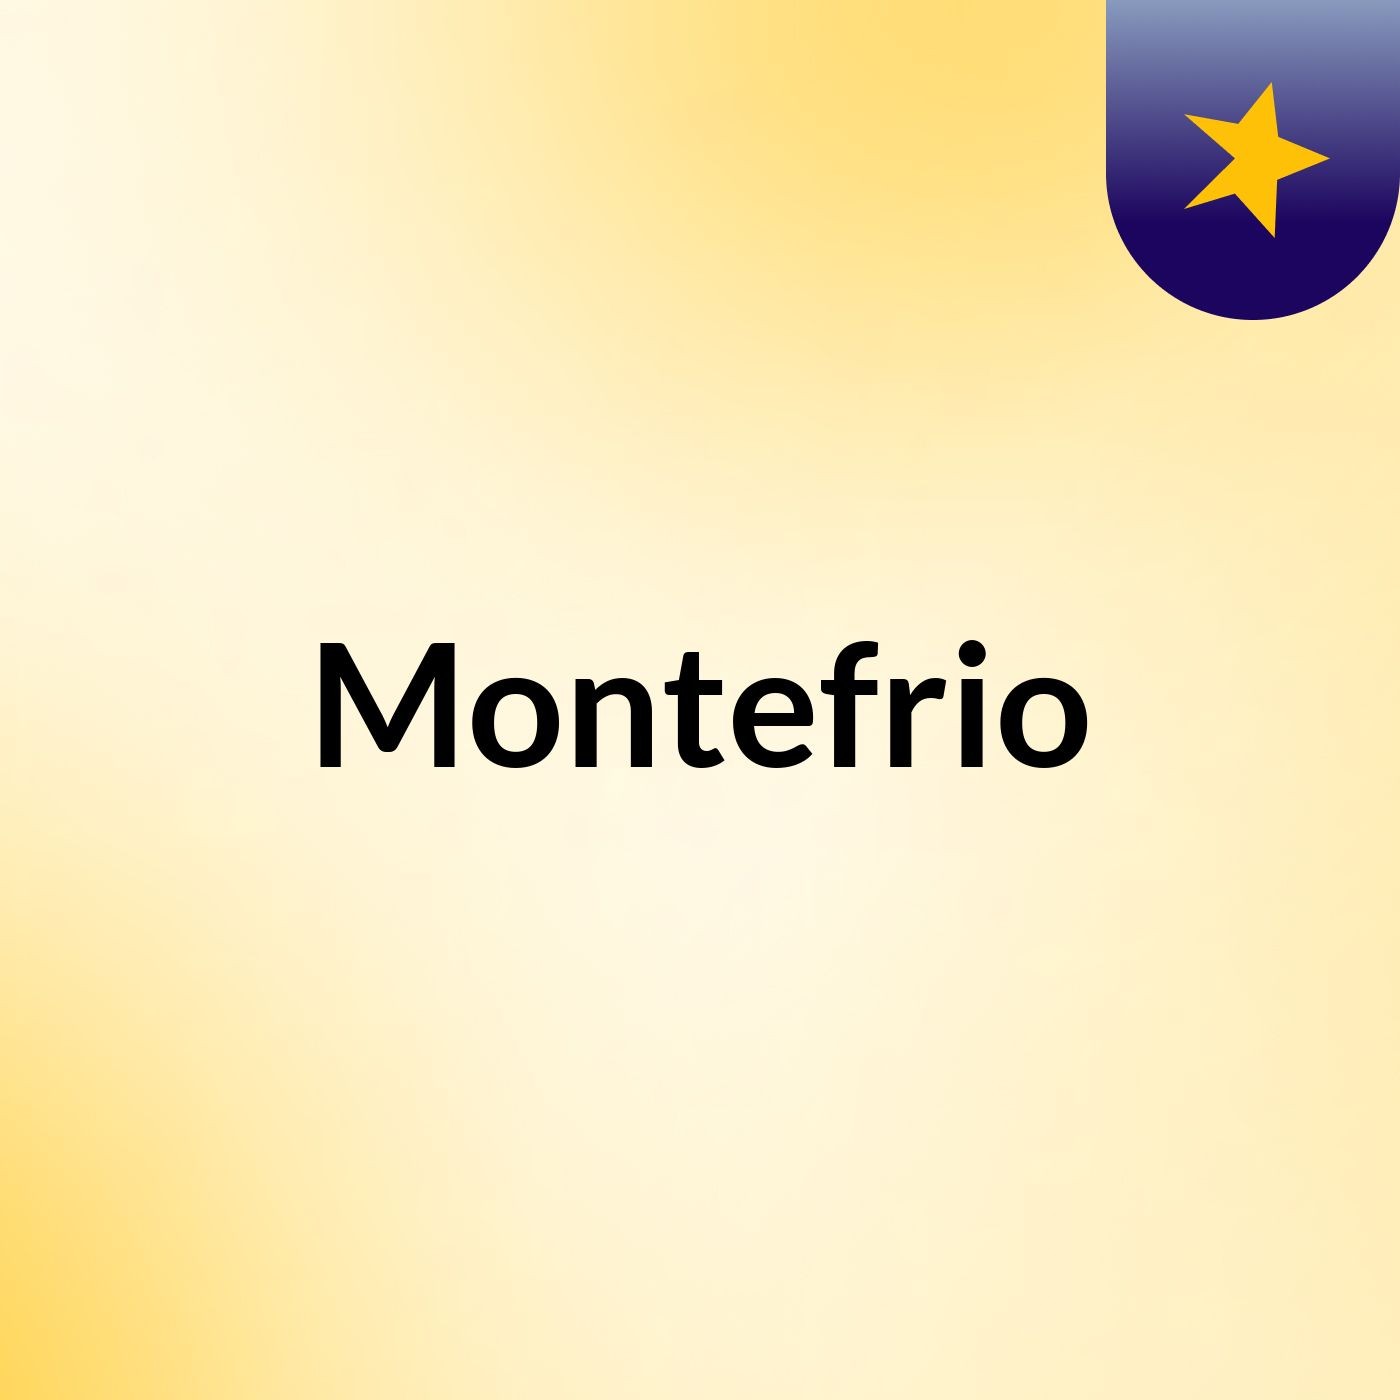 Montefrio